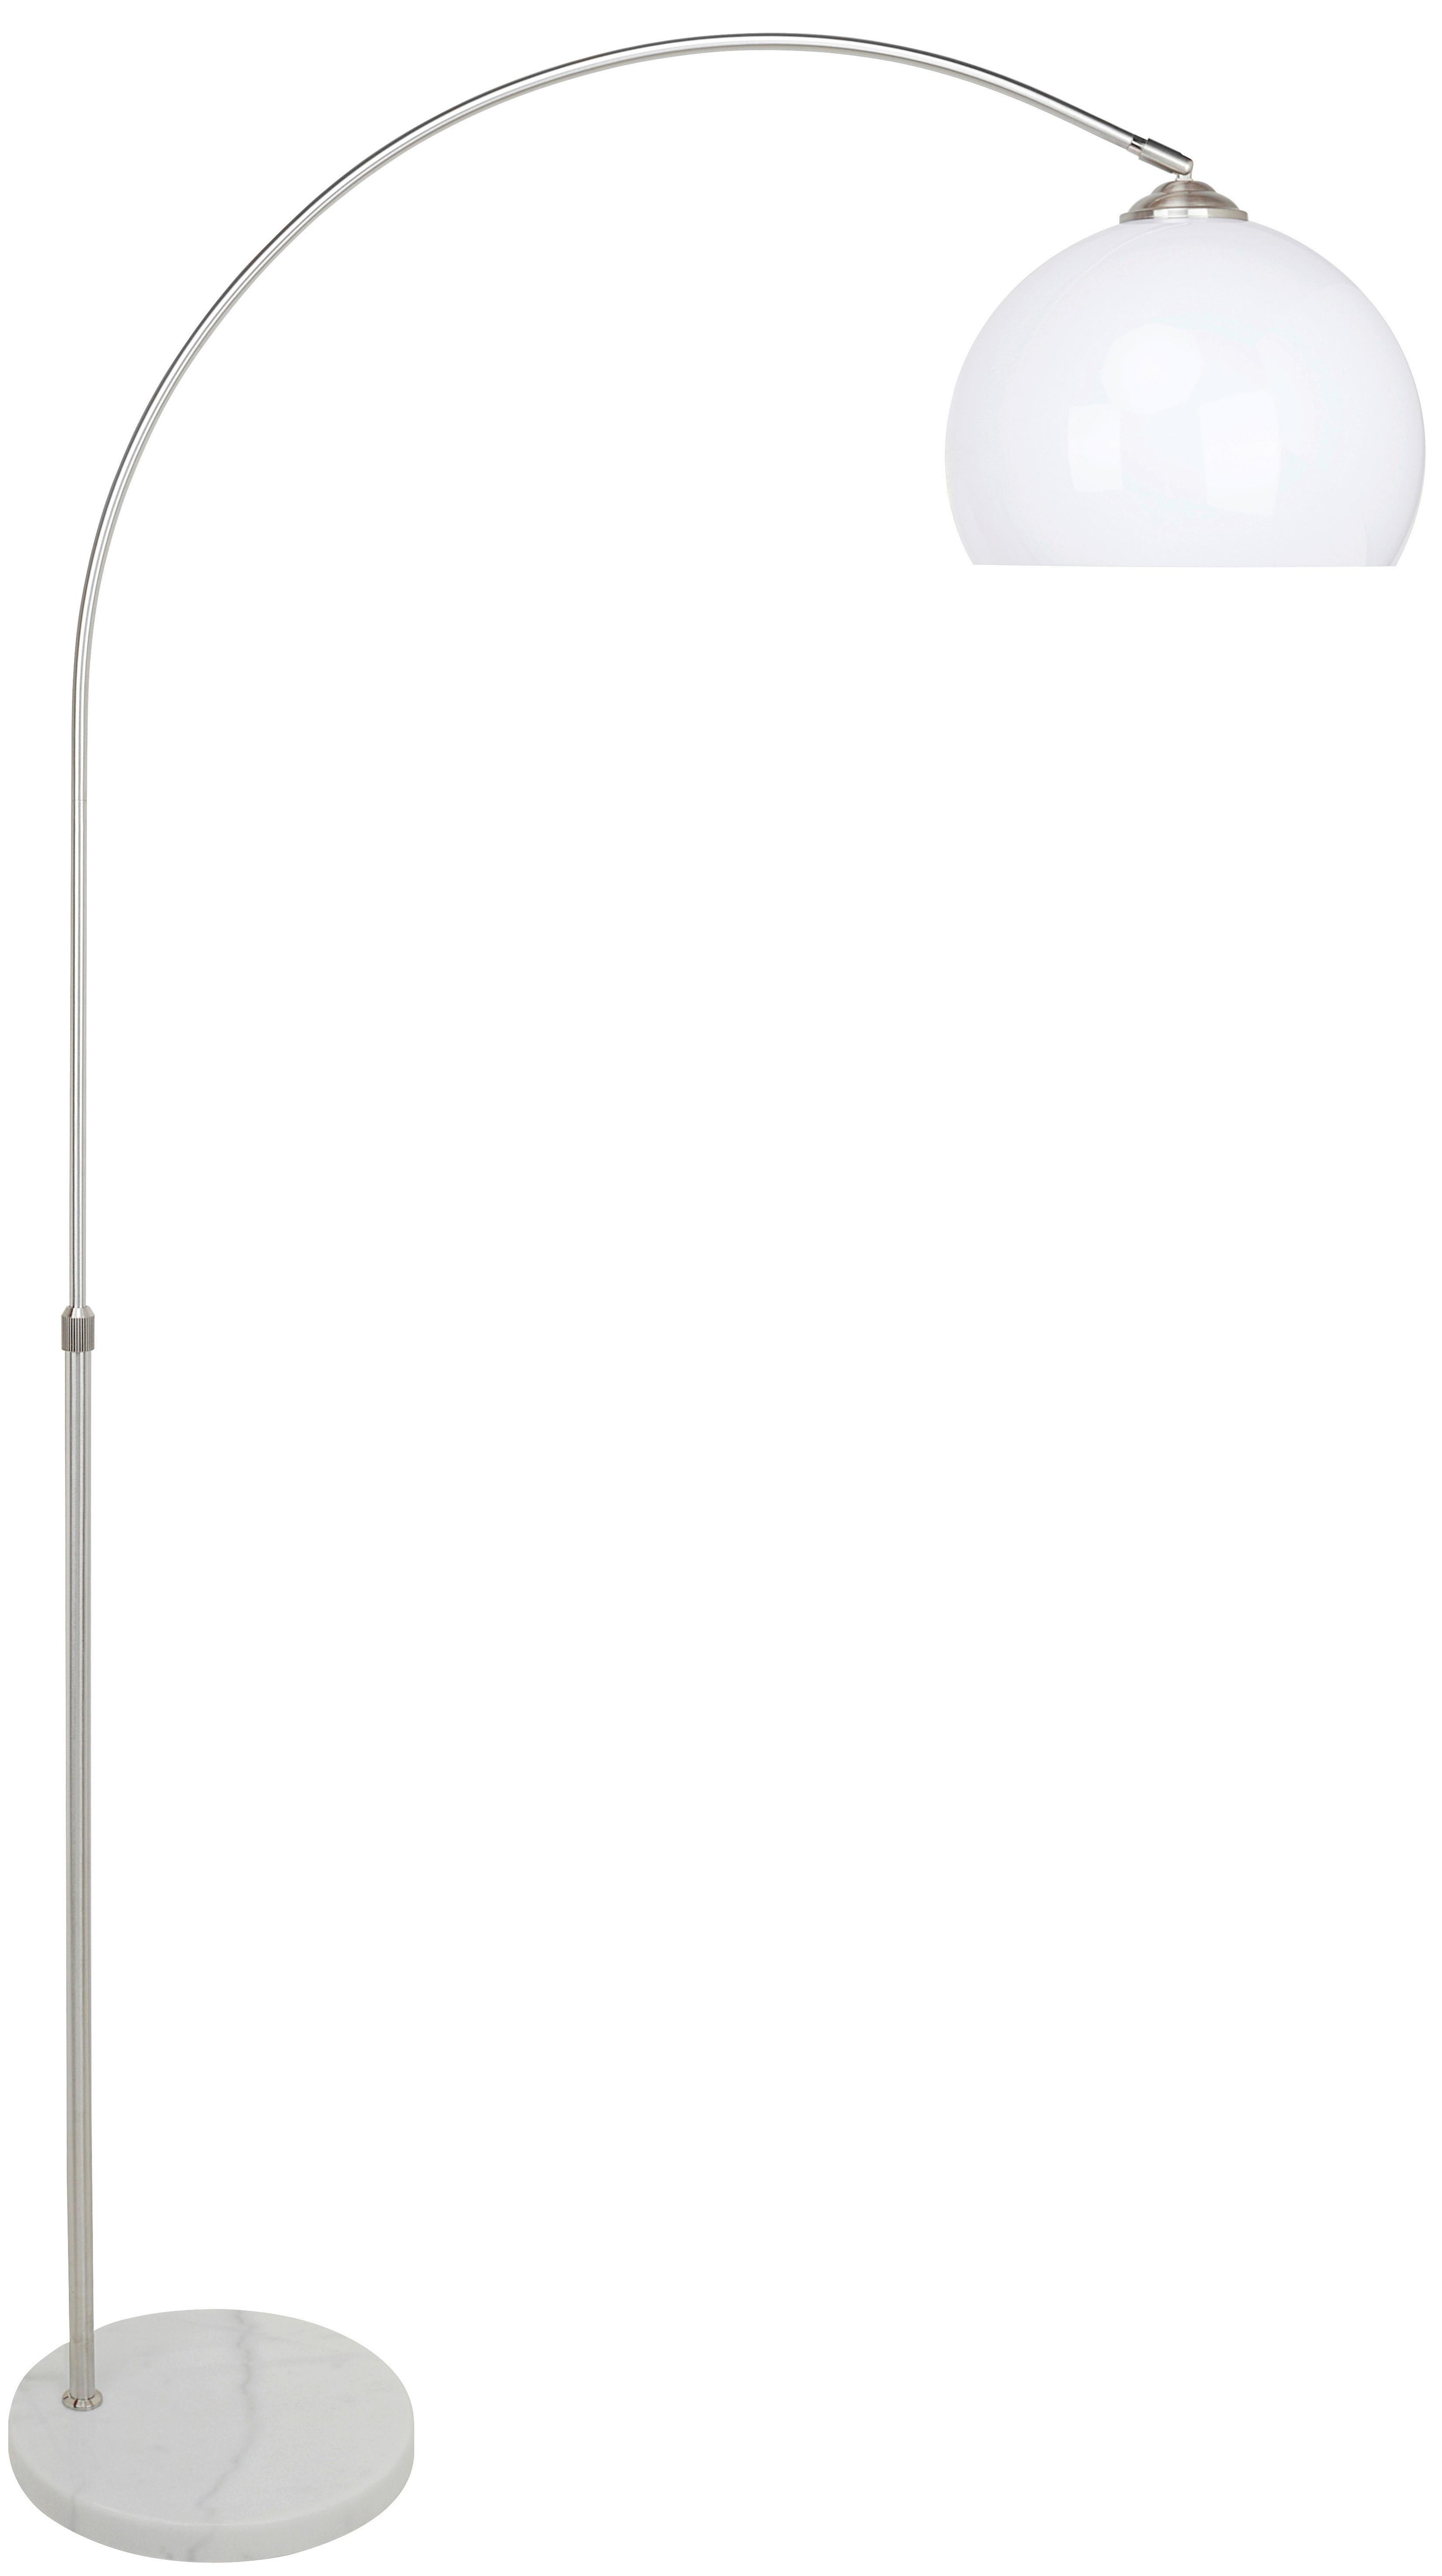 Stojacia Lampa Raman V:141-196cm, 40 Watt - biela/niklová, Moderný, kov/plast (30/141-196cm) - Modern Living